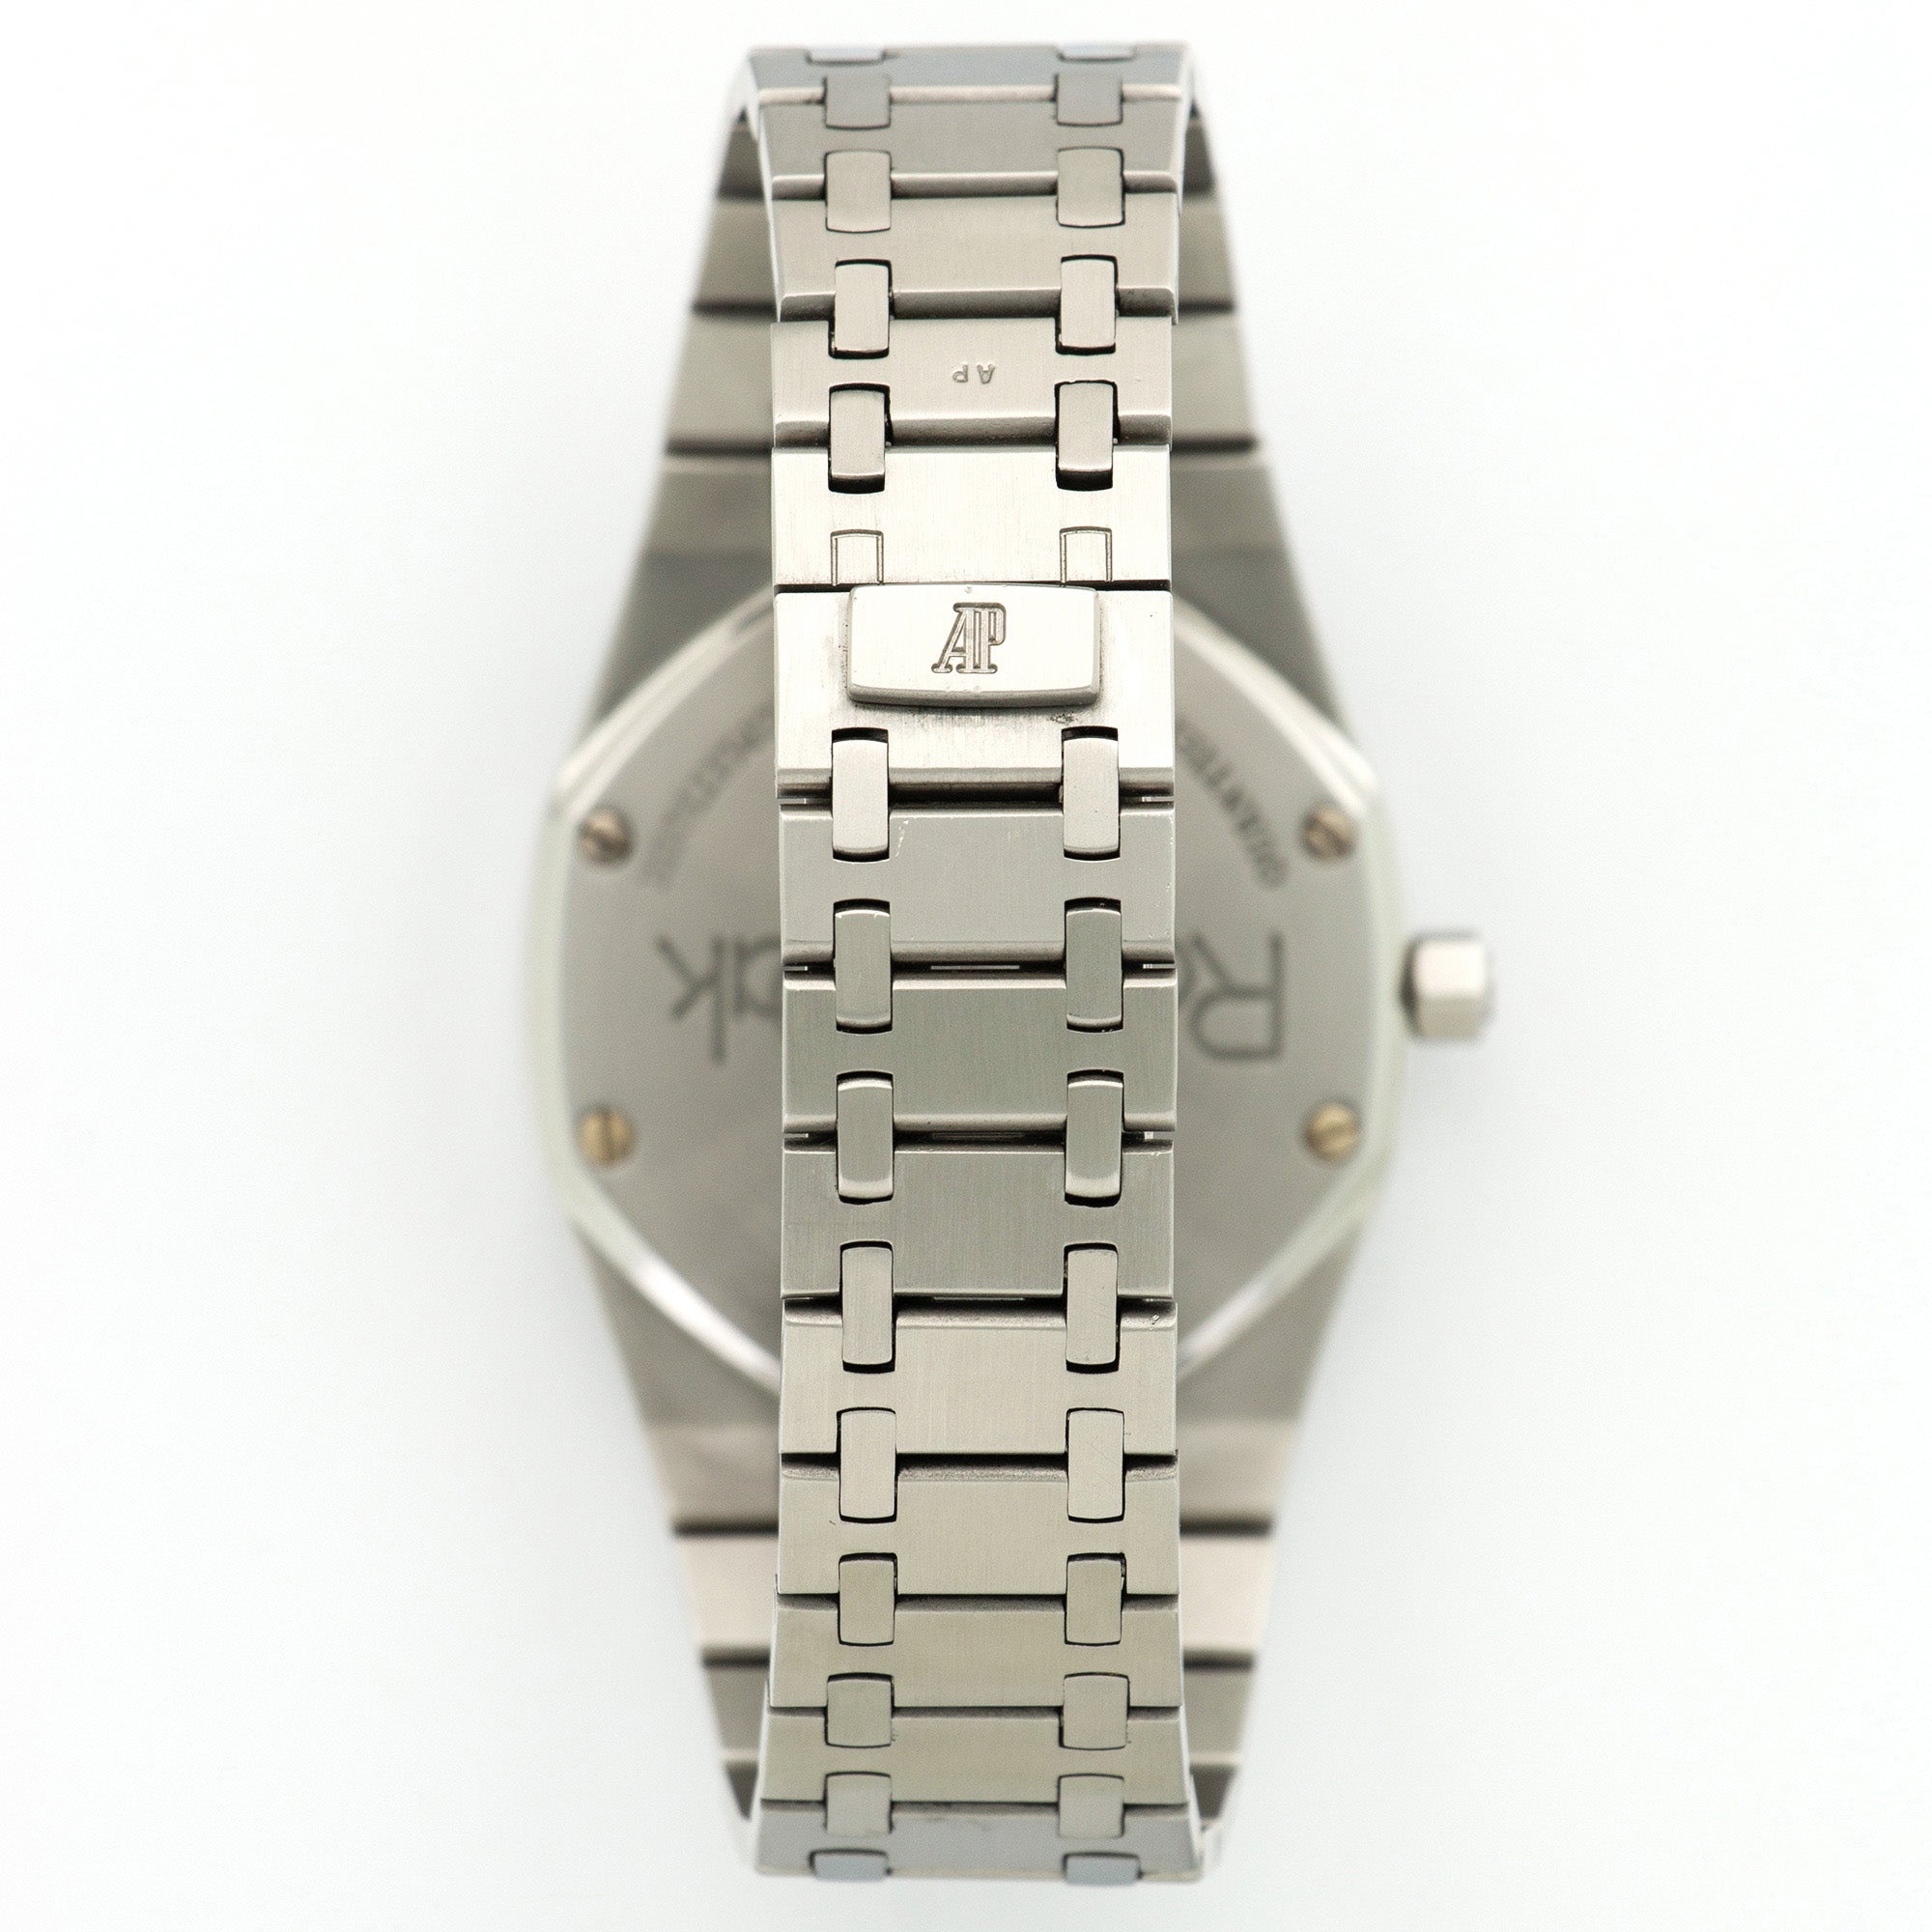 Audemars Piguet - Audemars Piguet Royal Oak Perpetual Calendar Watch Ref. 25654 - The Keystone Watches